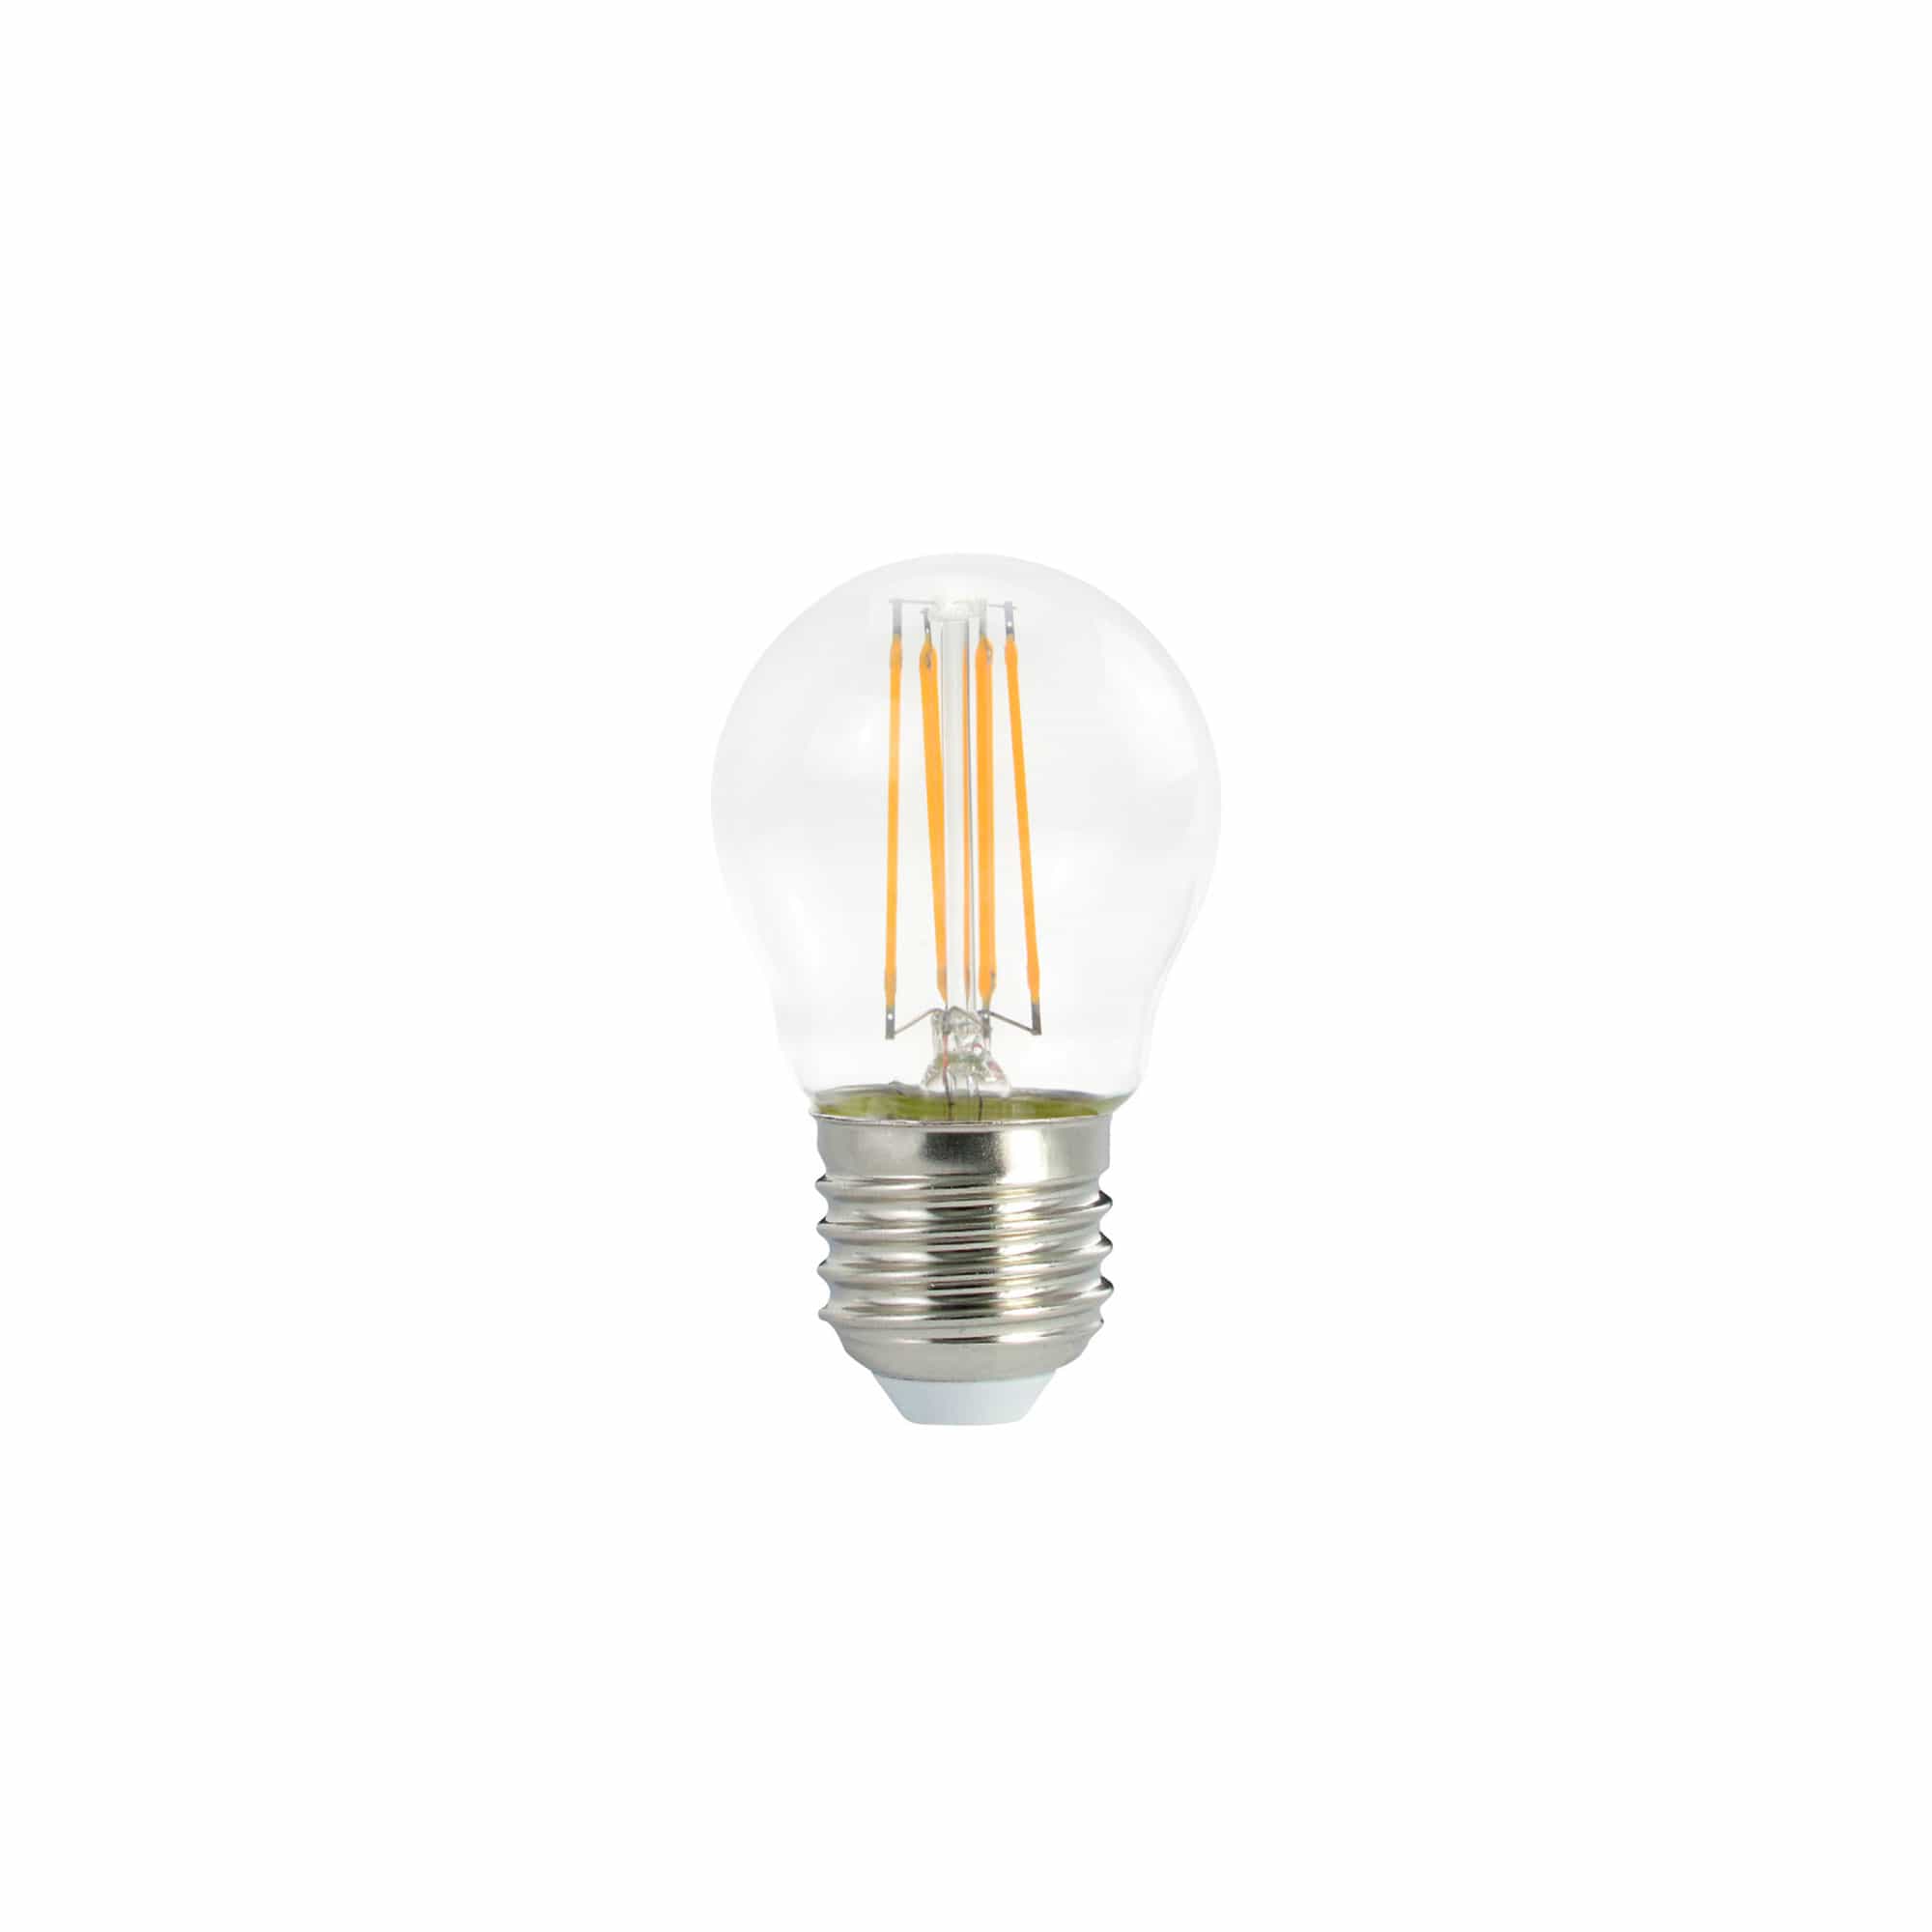 Glødetråd LED Globe-lampe 4W E27 Ikke dimbar